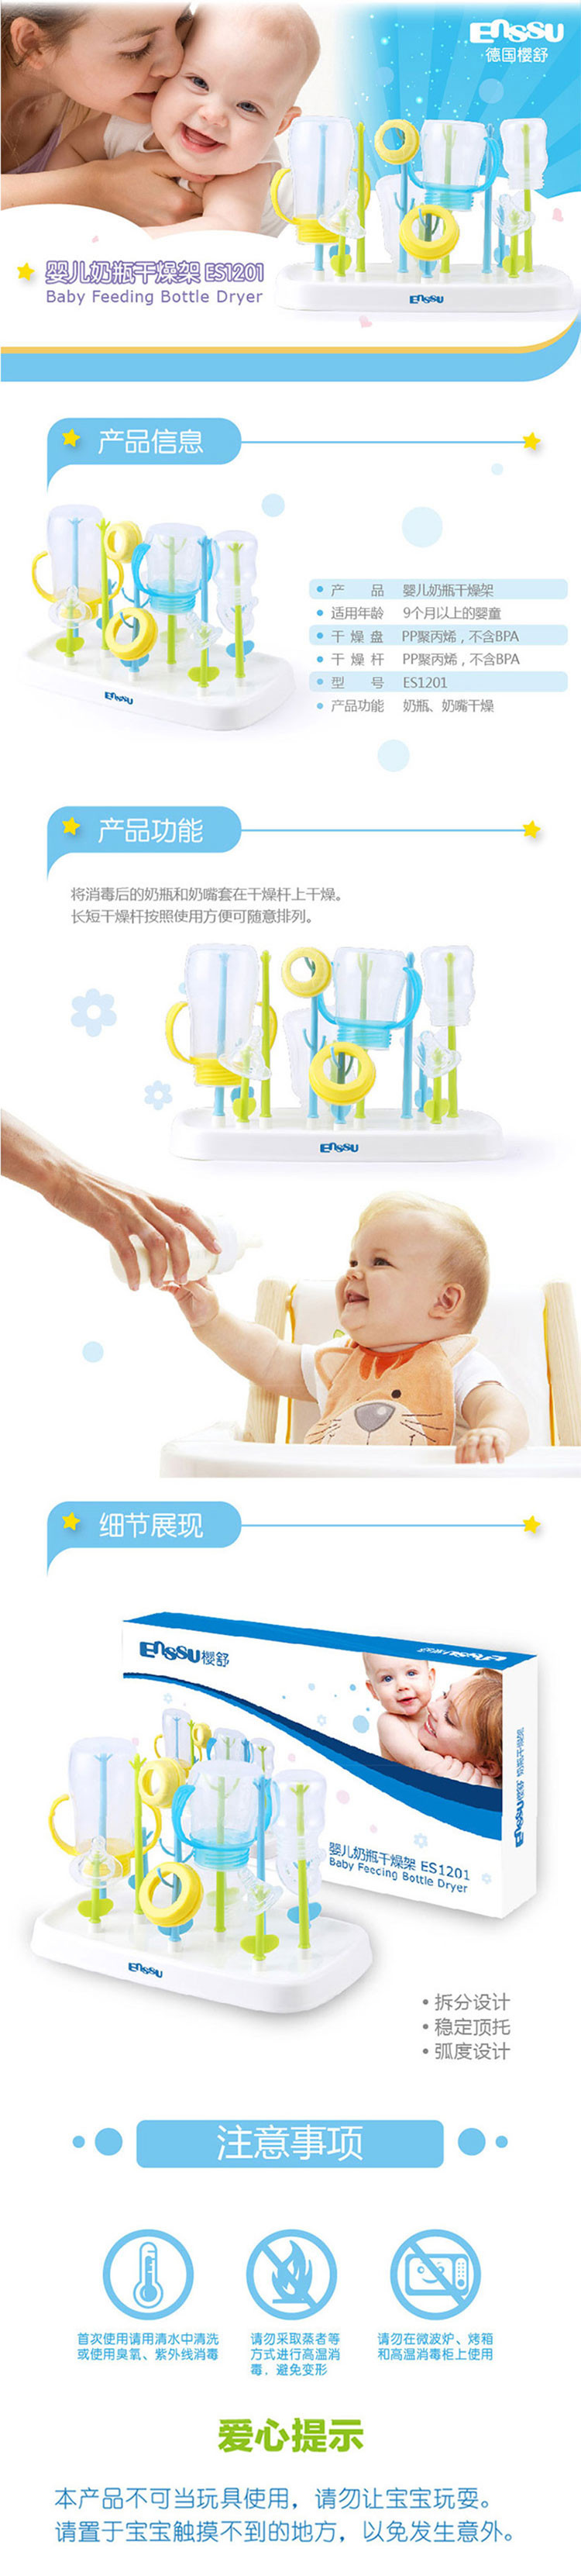 樱舒/ENSSU 婴儿奶瓶干燥架 ES1201